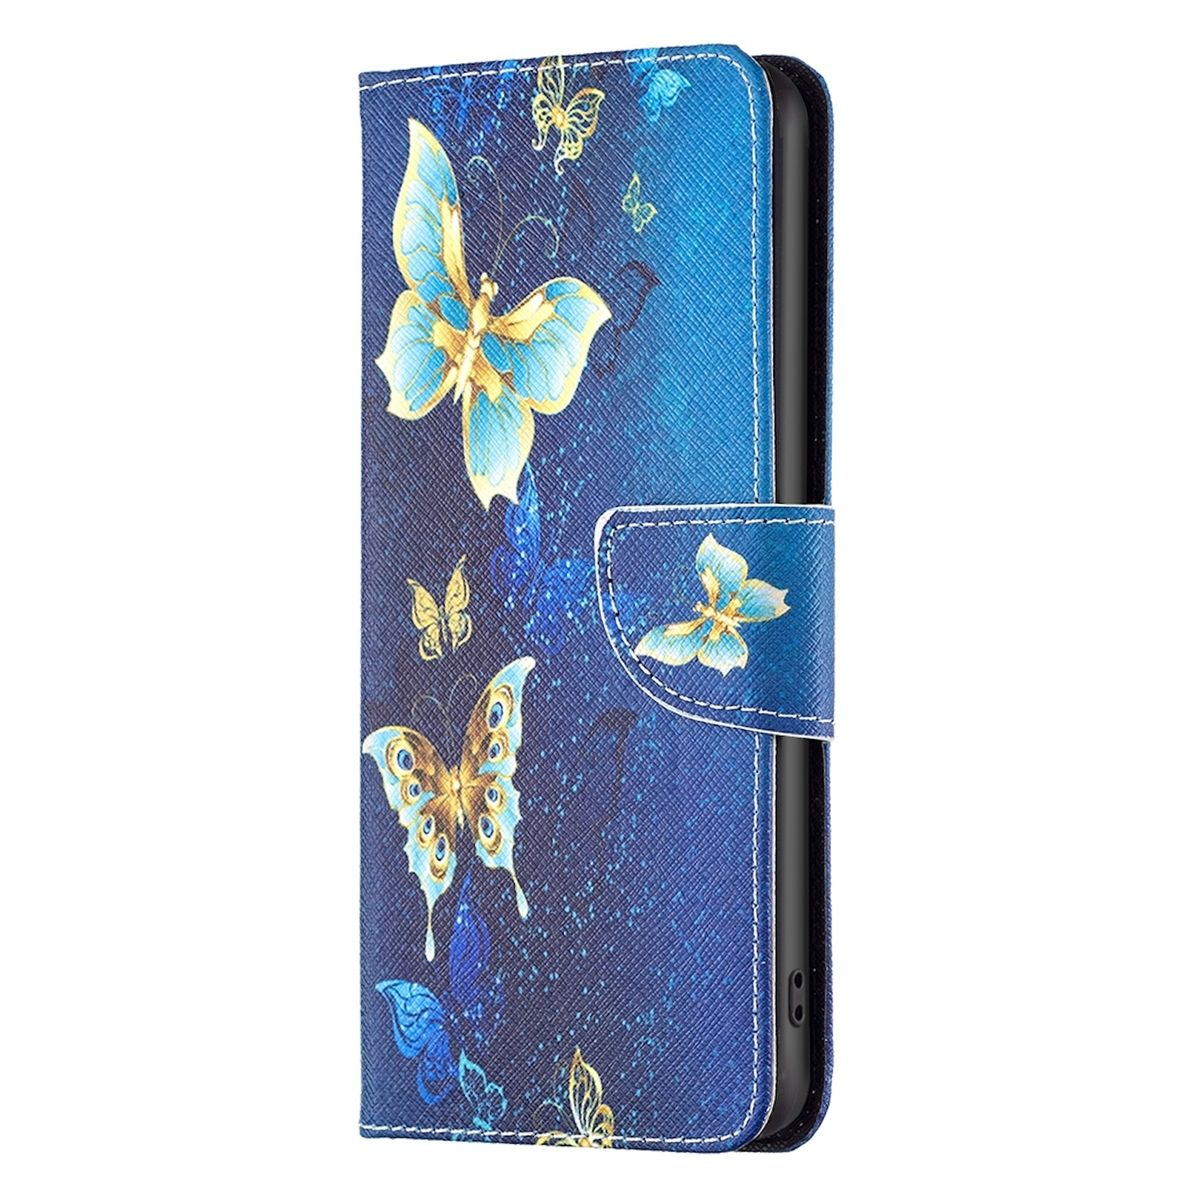 & Motiv Fach, Geld Redmi Kreditkarten Book Druck Xiaomi, Wallet mit Tasche Blau 13, / Bookcover, WIGENTO Note